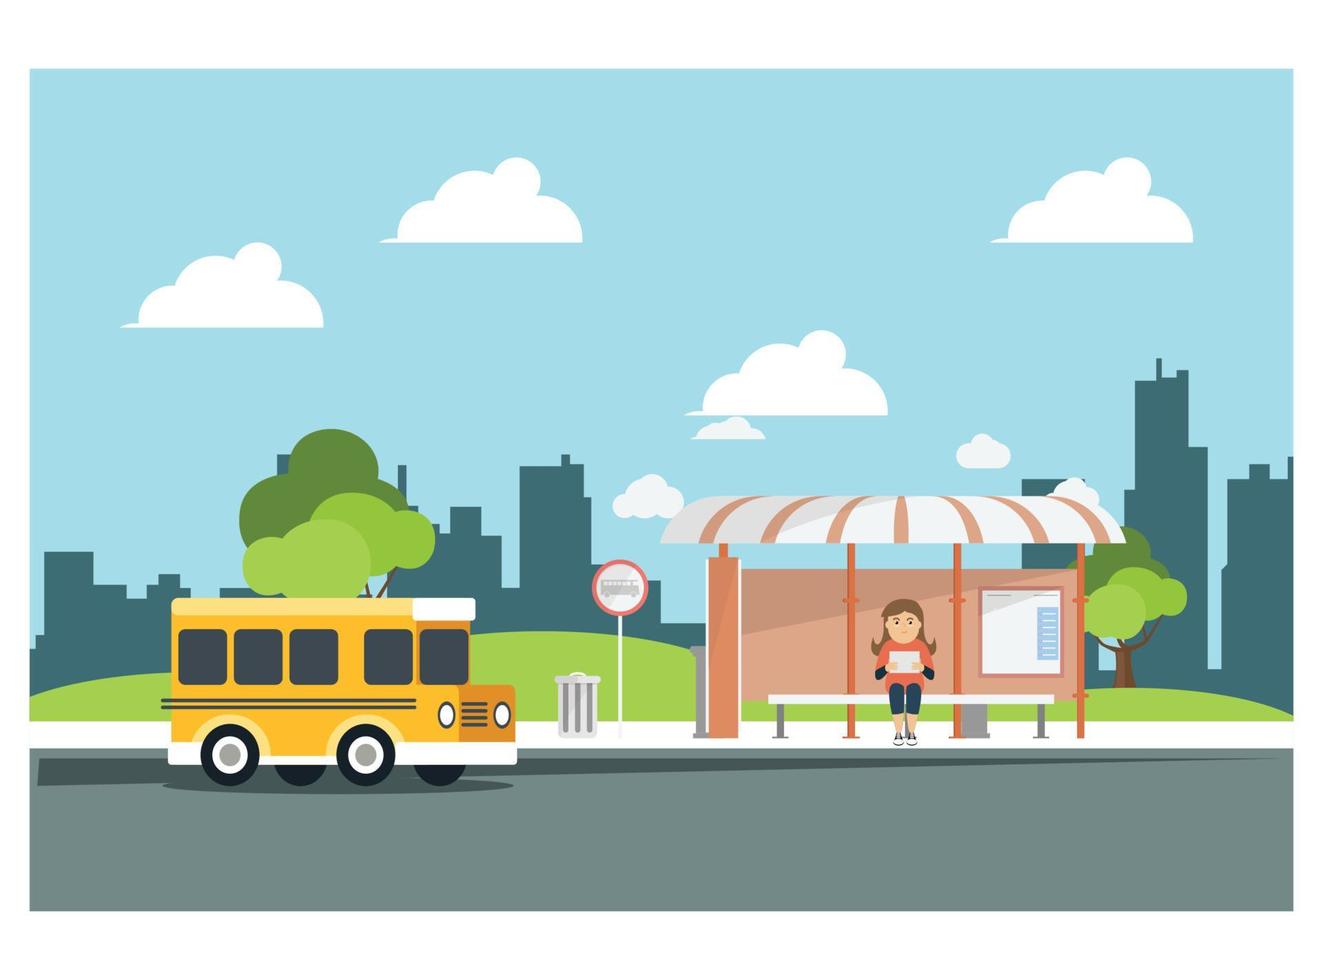 ilustración plana esperando el autobús en. adecuado para diagramas, infografías y otros recursos gráficos en un banco del parque vector